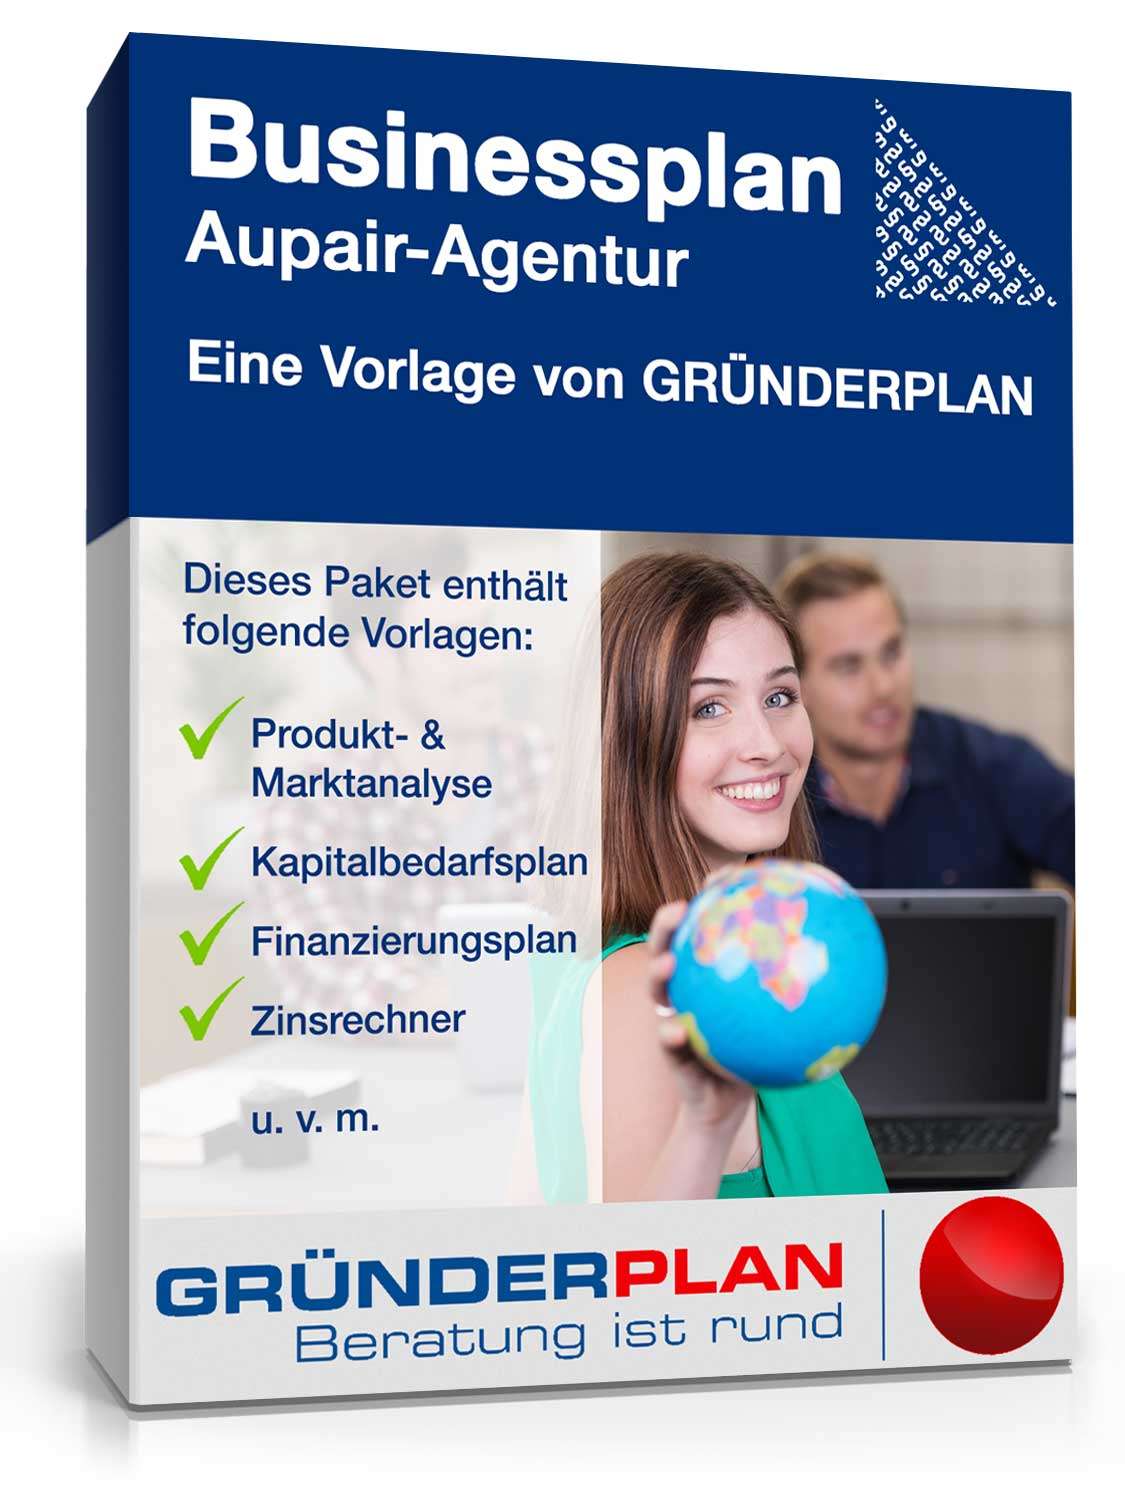 Hauptbild des Produkts: Businessplan Aupair-Agentur von Gründerplan